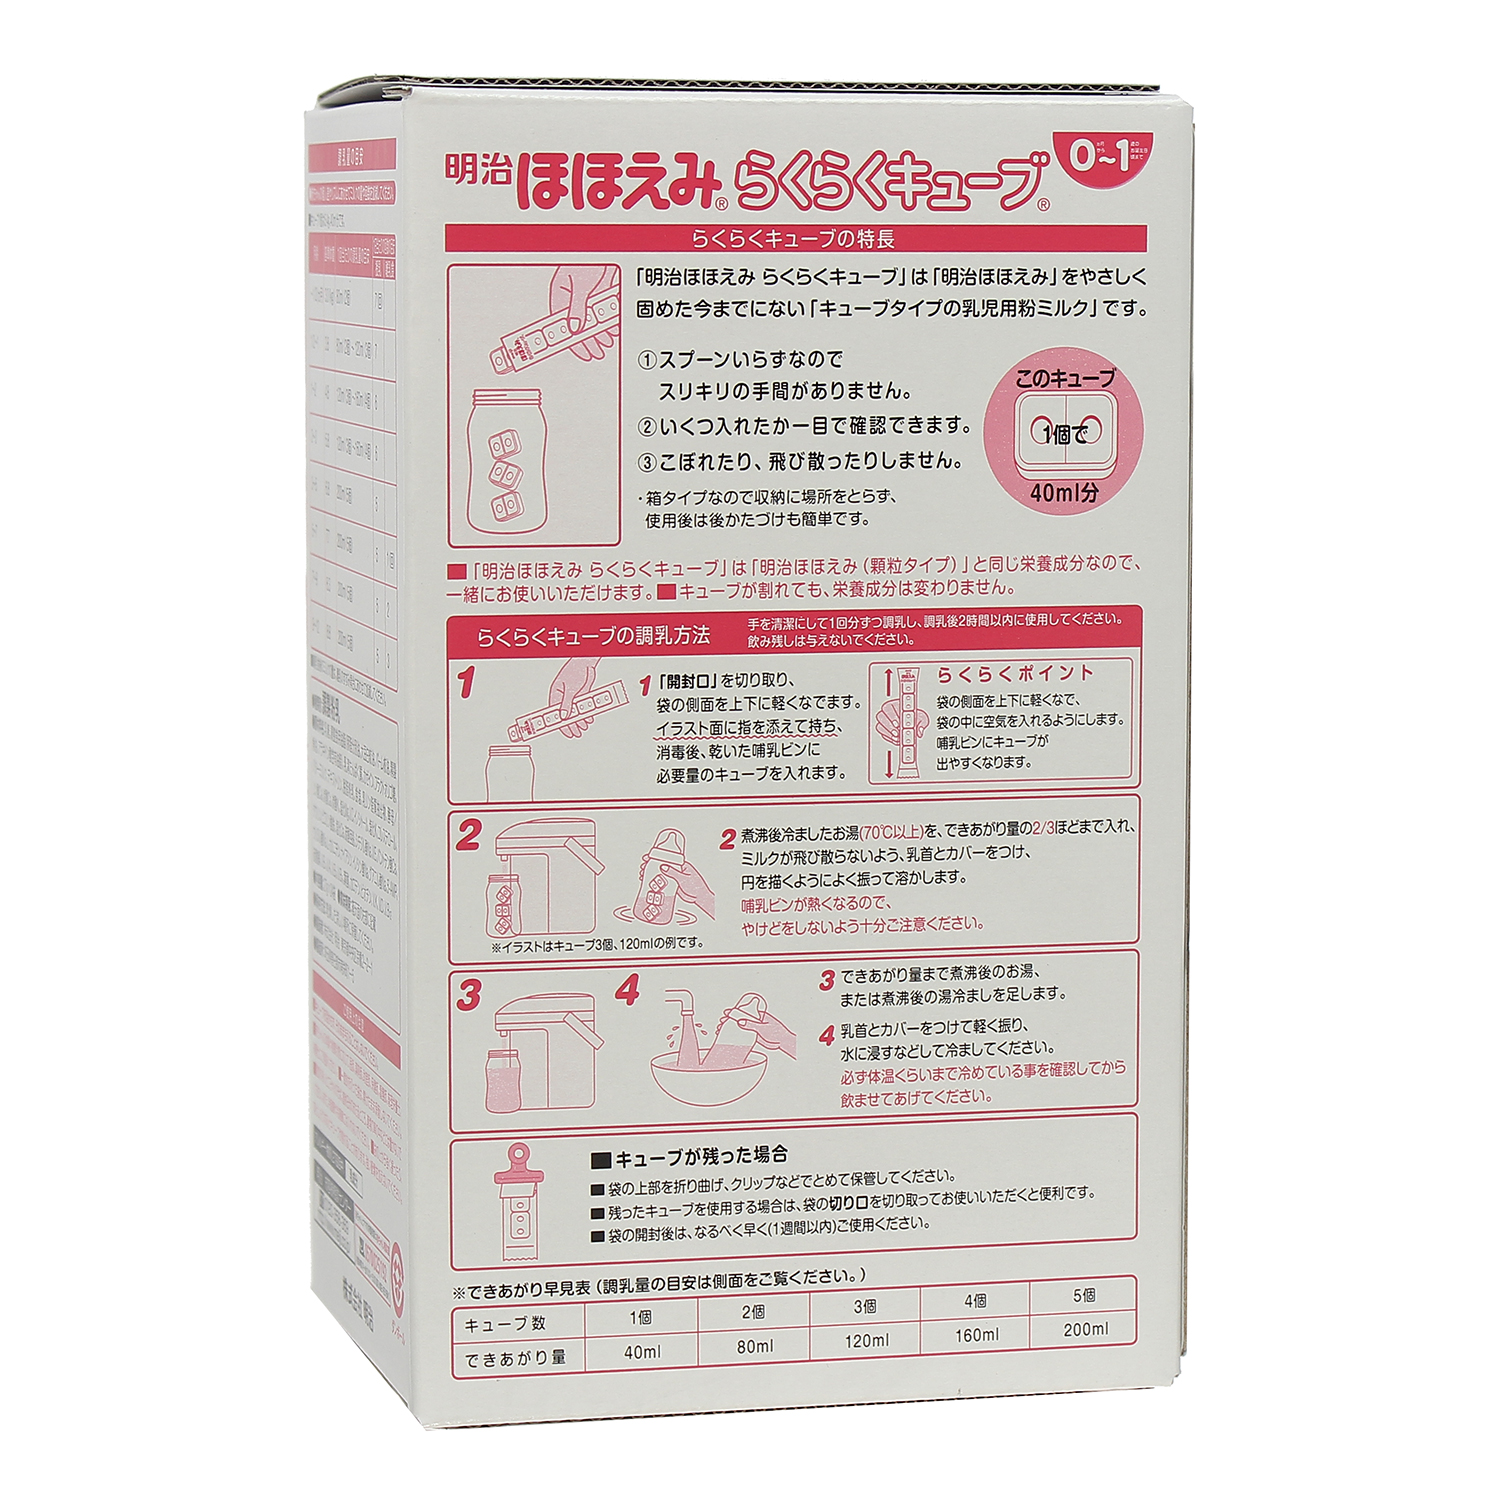 Sữa cho trẻ sơ sinh từ 0-1 tuổi Meiji Nhật giúp phát triển cân đối chiều cao, cân nặng, trí não (dạng thanh)- QuaTangMe Extaste